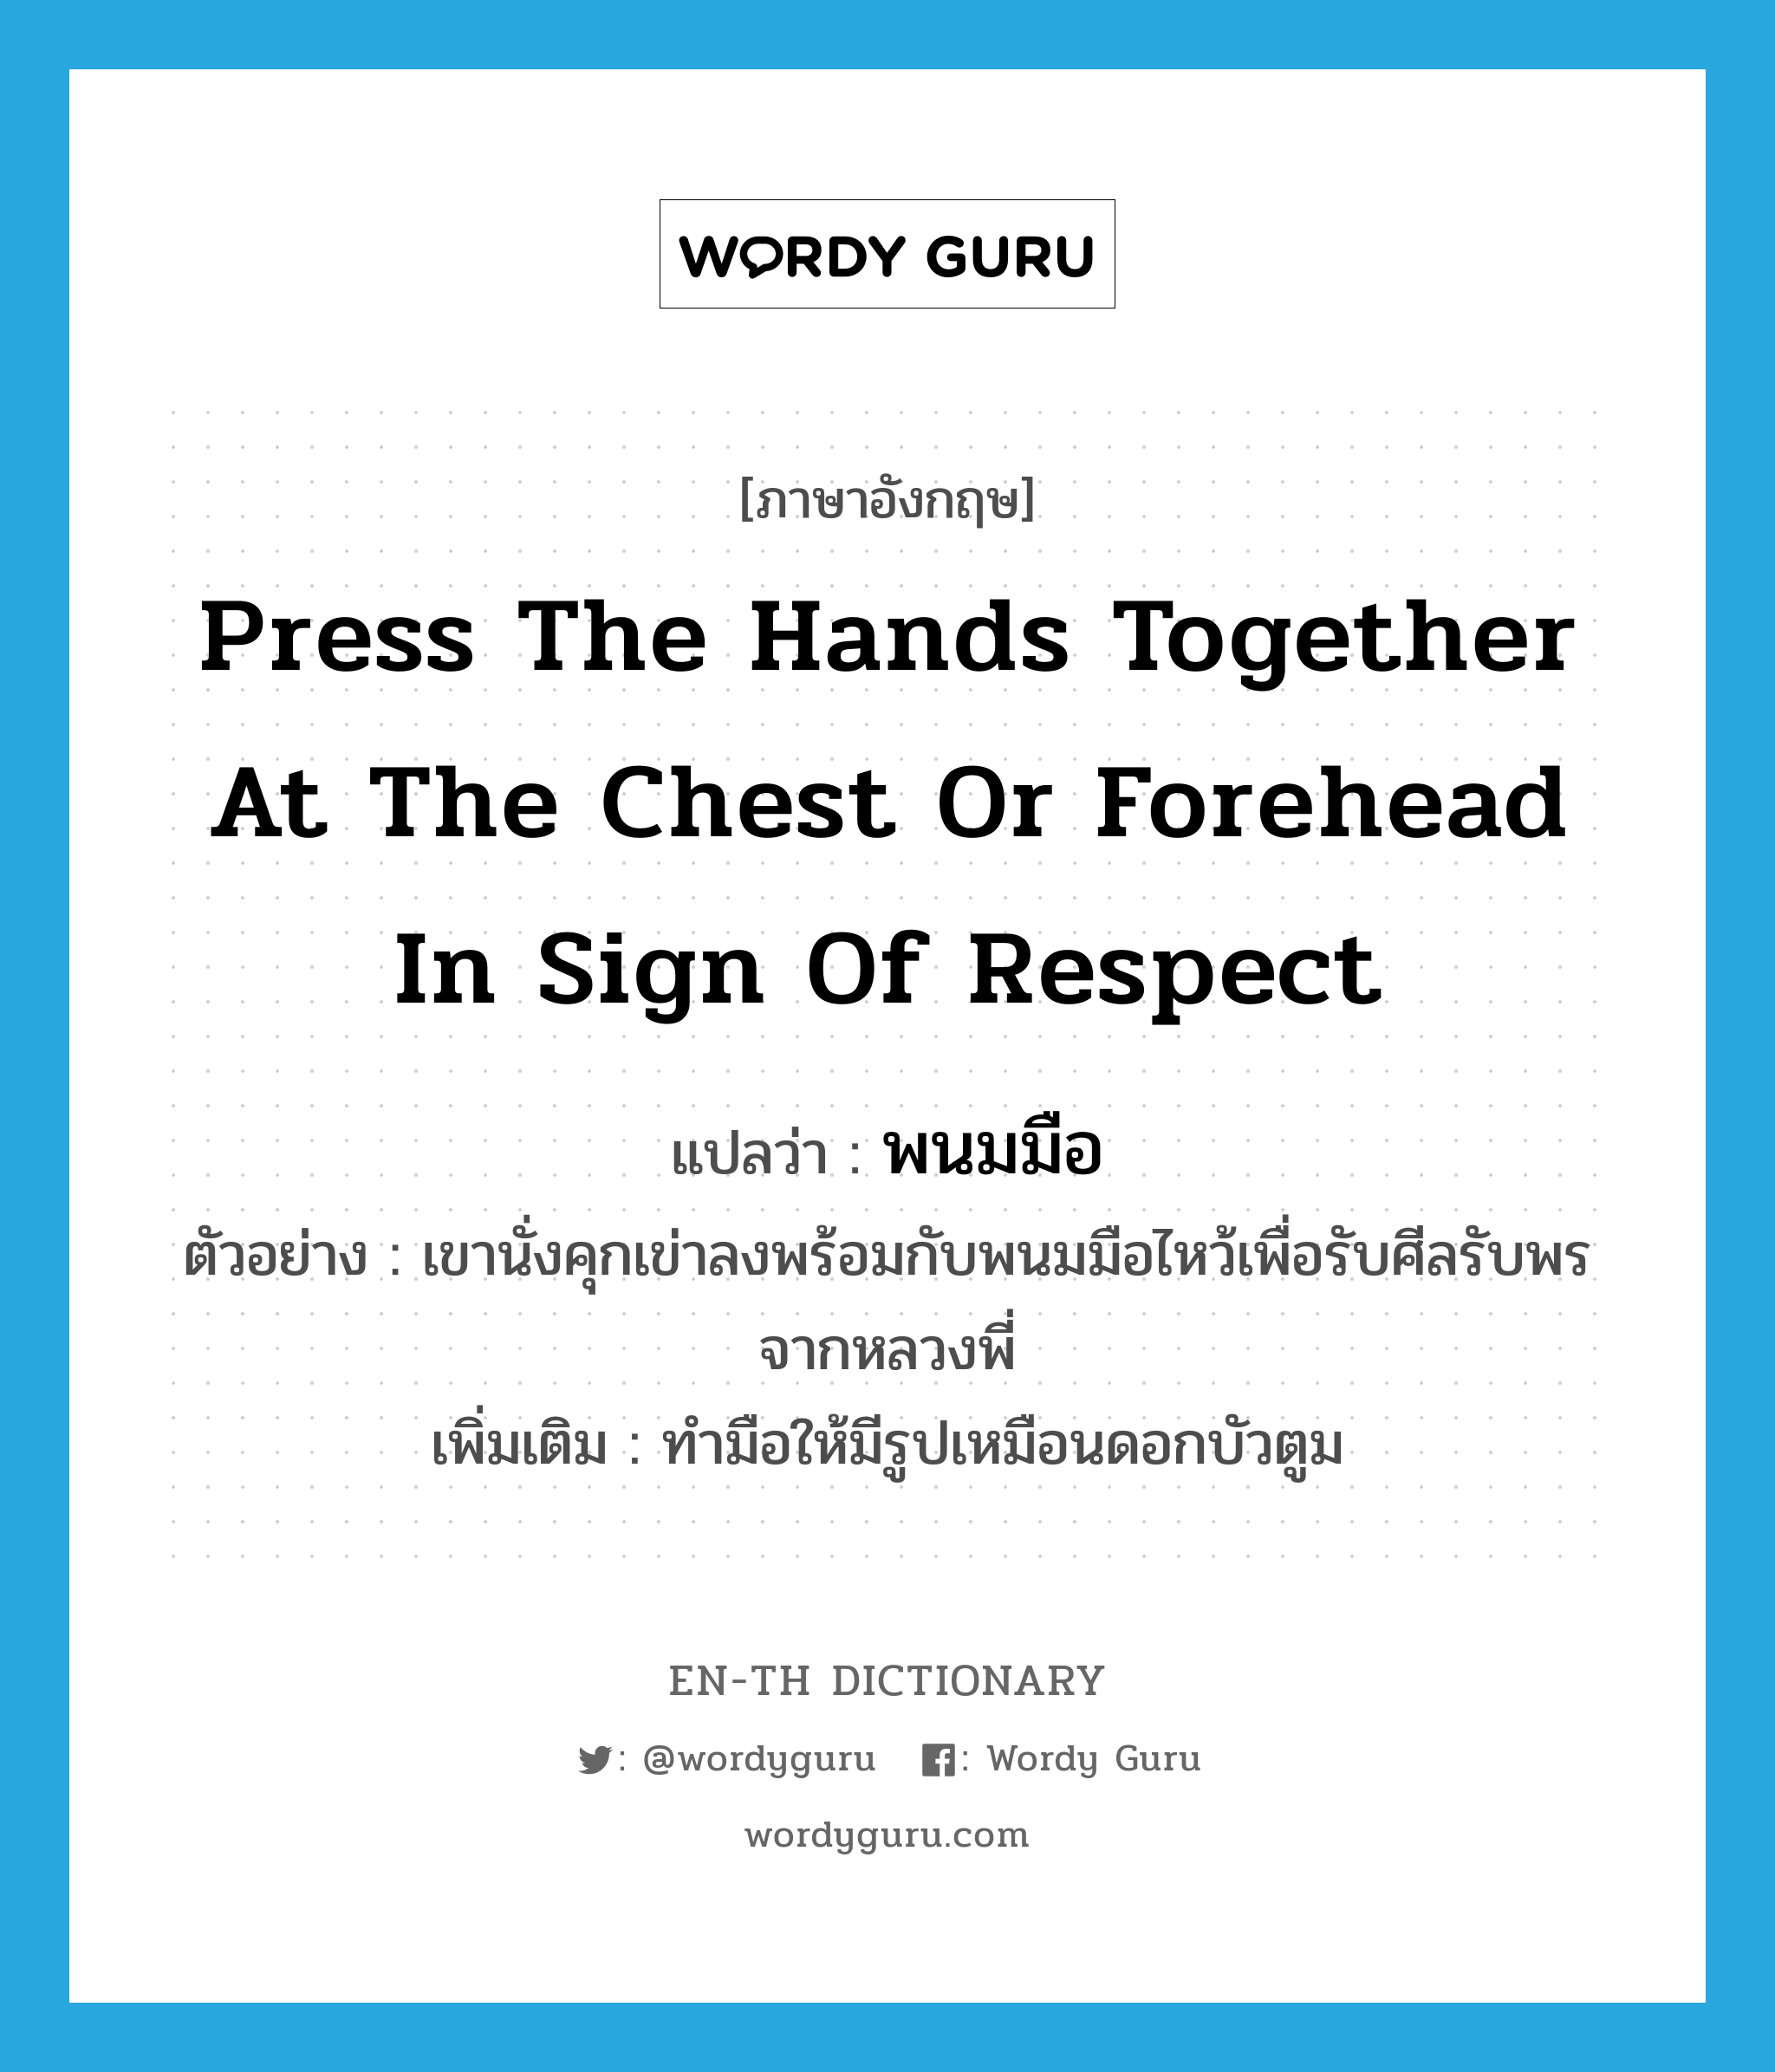 พนมมือ ภาษาอังกฤษ?, คำศัพท์ภาษาอังกฤษ พนมมือ แปลว่า press the hands together at the chest or forehead in sign of respect ประเภท V ตัวอย่าง เขานั่งคุกเข่าลงพร้อมกับพนมมือไหว้เพื่อรับศีลรับพรจากหลวงพี่ เพิ่มเติม ทำมือให้มีรูปเหมือนดอกบัวตูม หมวด V